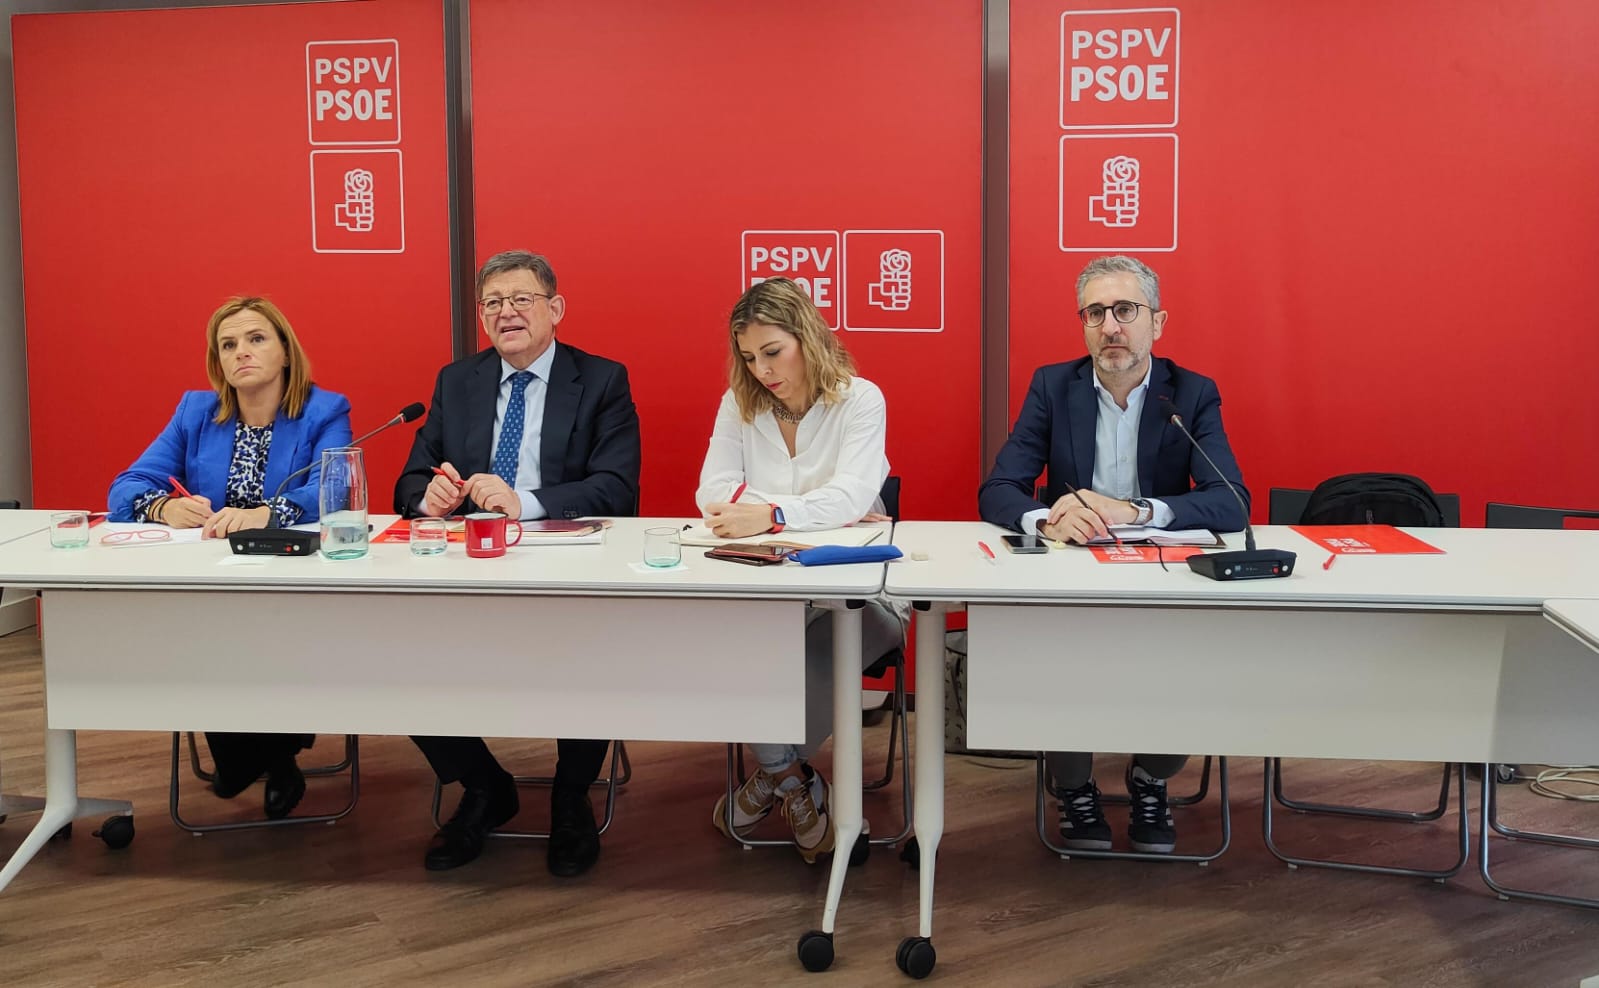 En este momento estás viendo El PSPV-PSOE pone en marcha una campaña a favor de un gobierno de progreso, concordia y convivencia